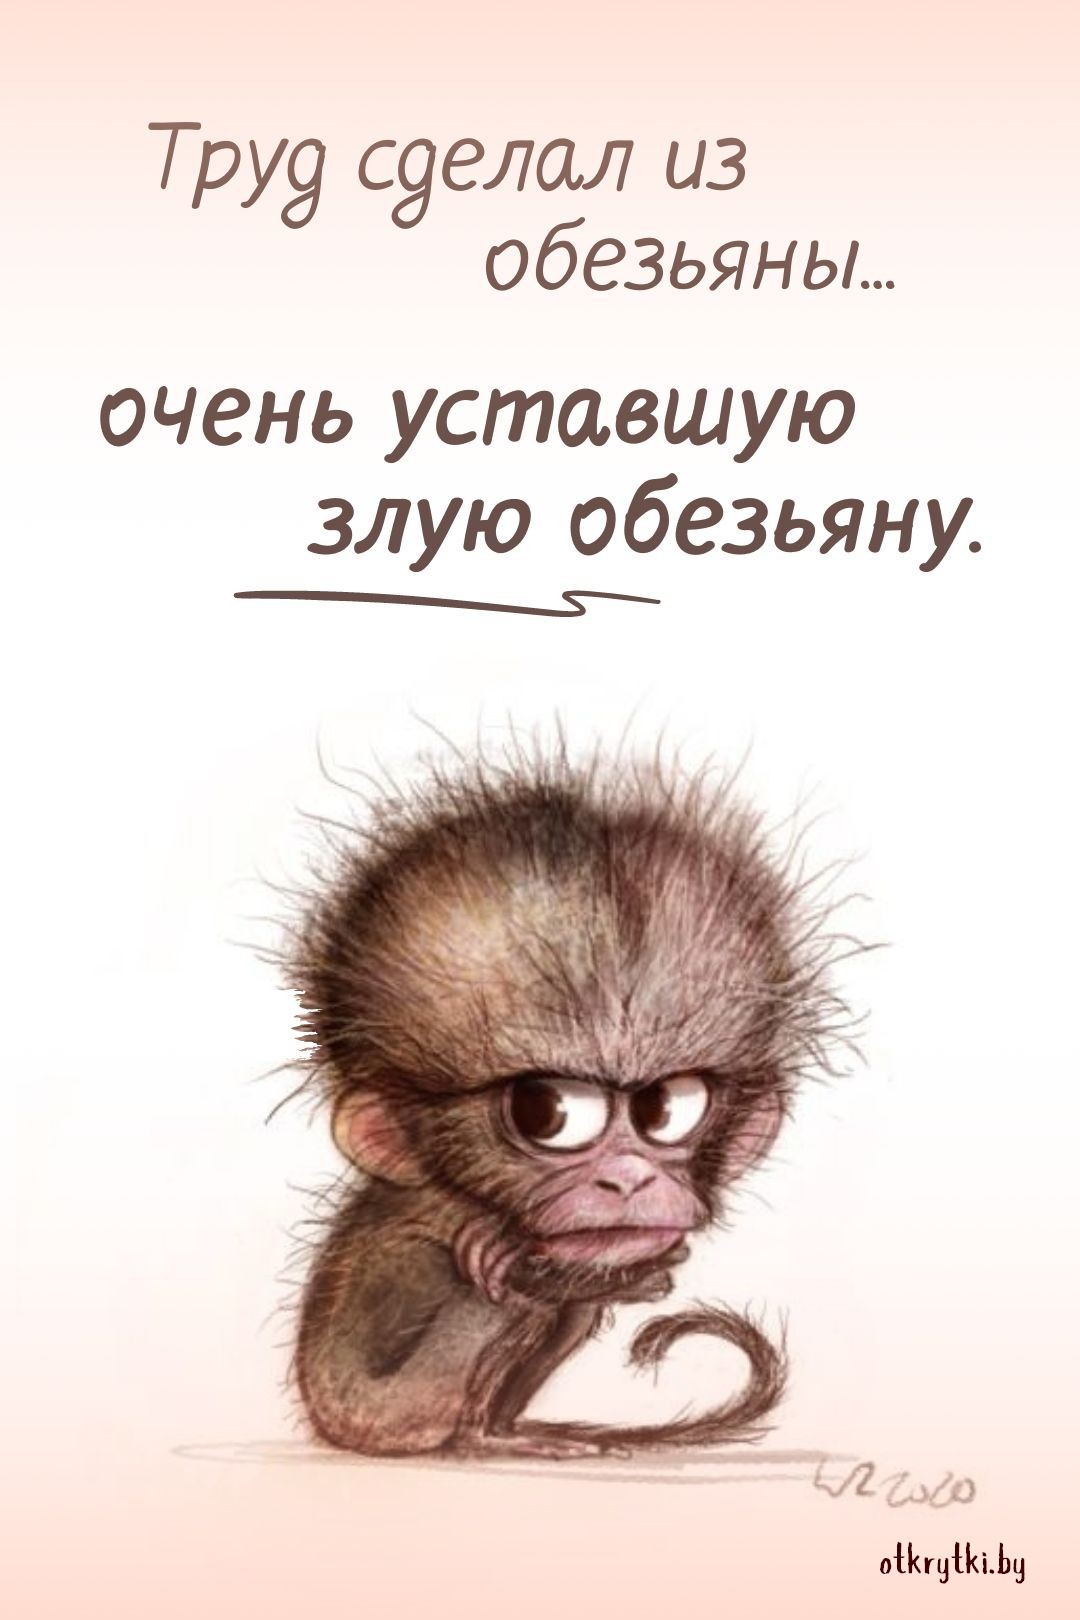 Картинка про труд и обезьяну